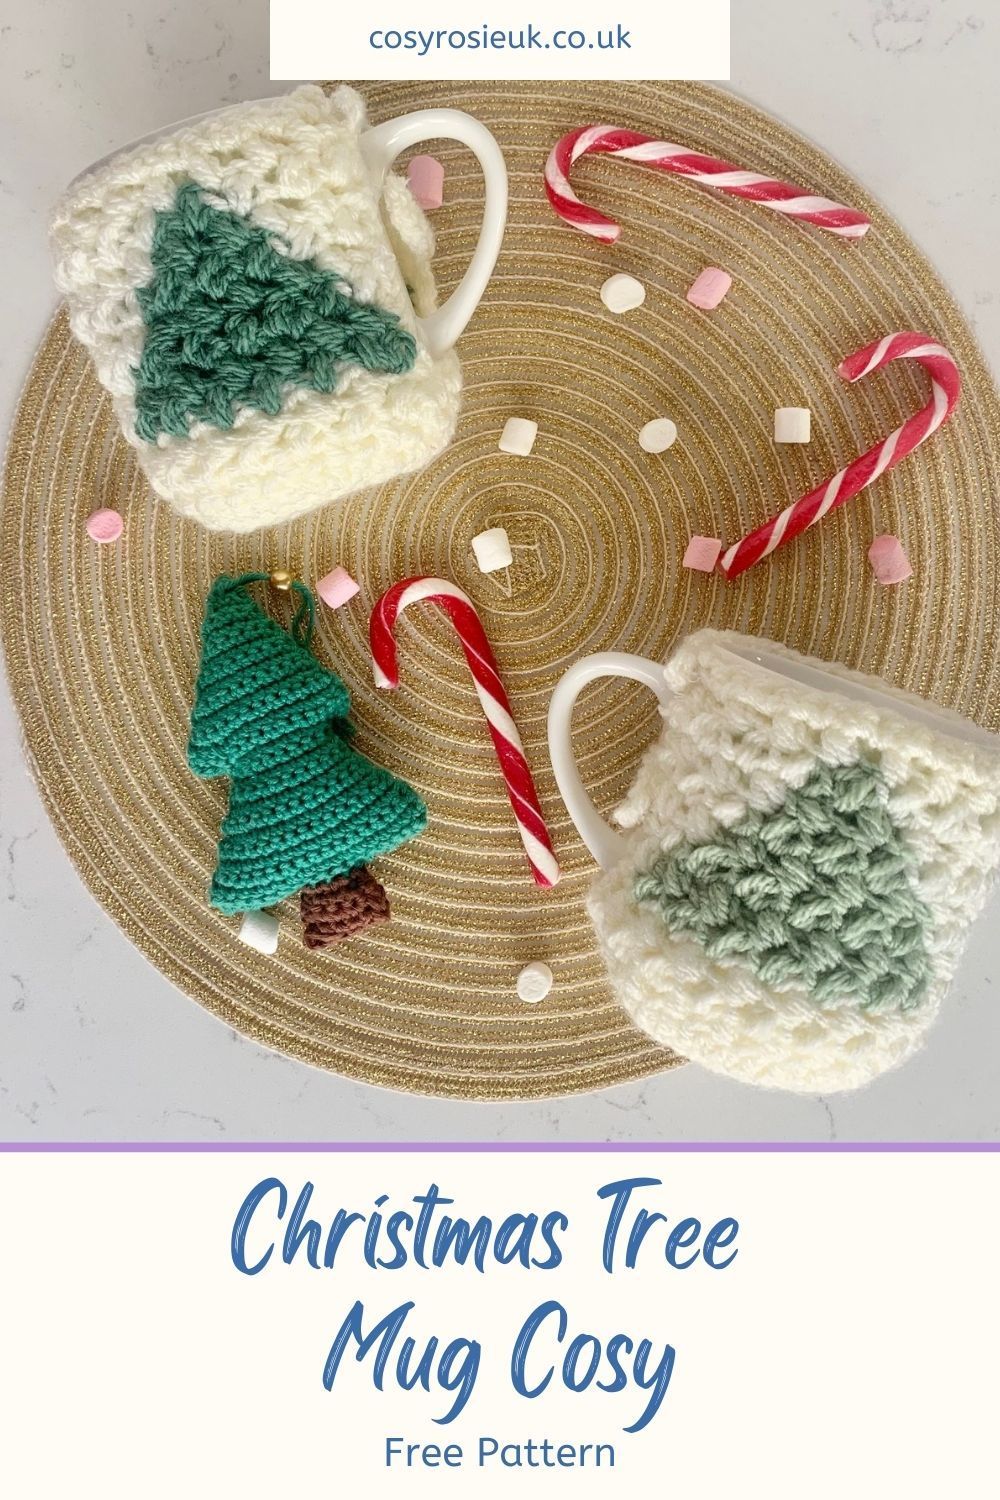 Free Christmas tree crochet mug cozy